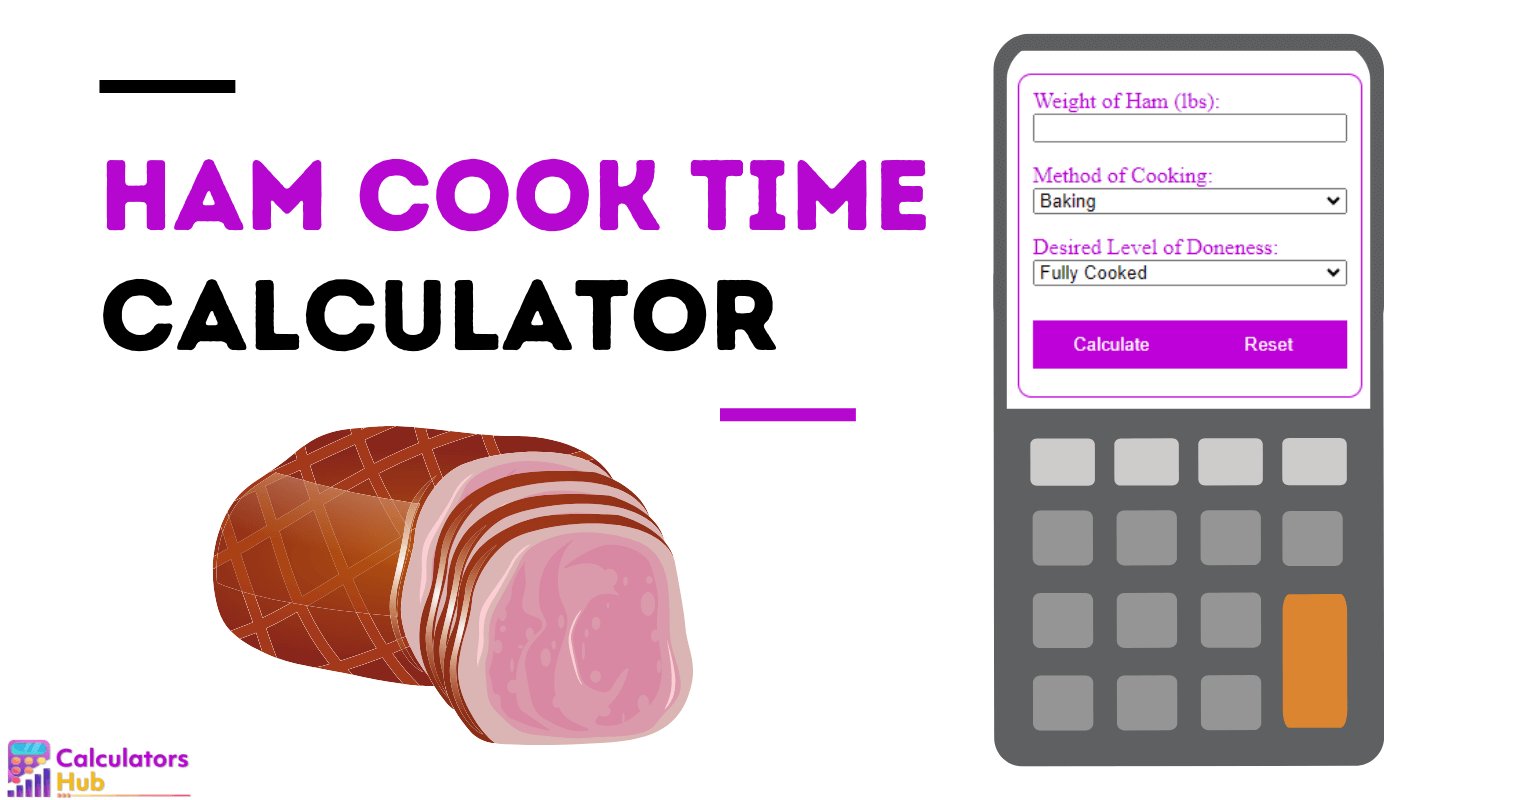 火腿烹饪时间计算器